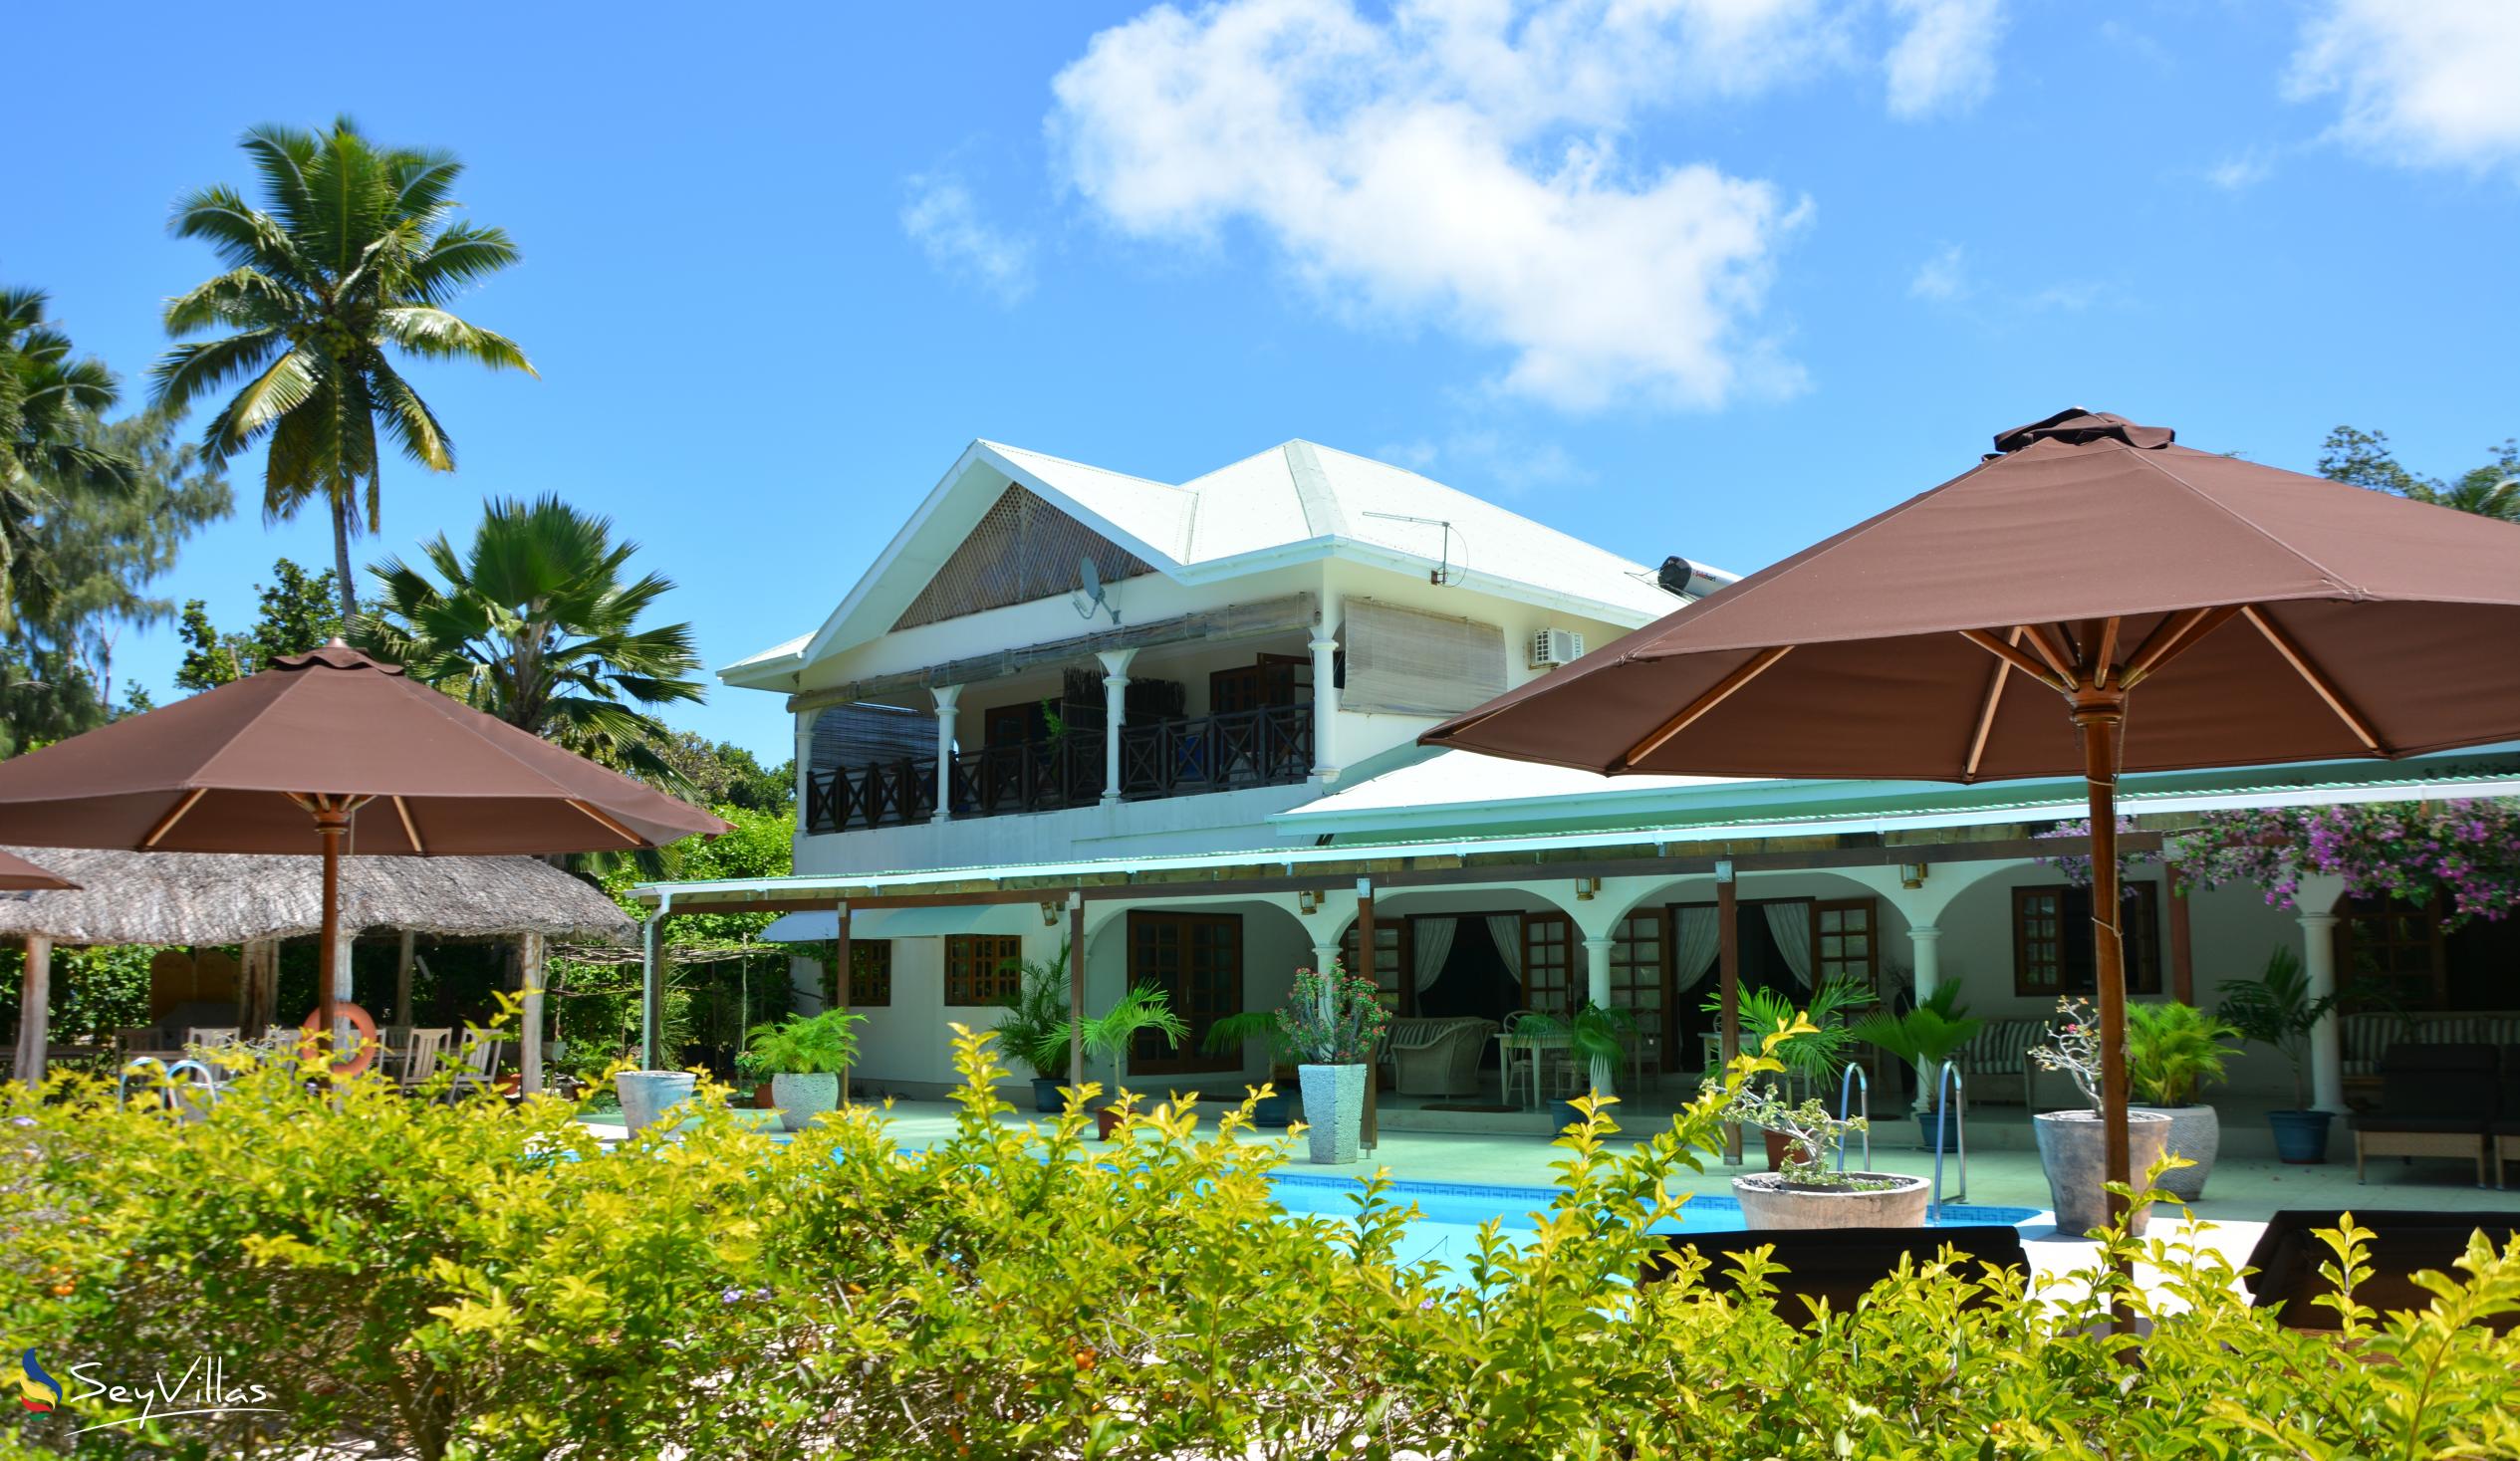 Foto 2: Villa de Cerf - Esterno - Cerf Island (Seychelles)